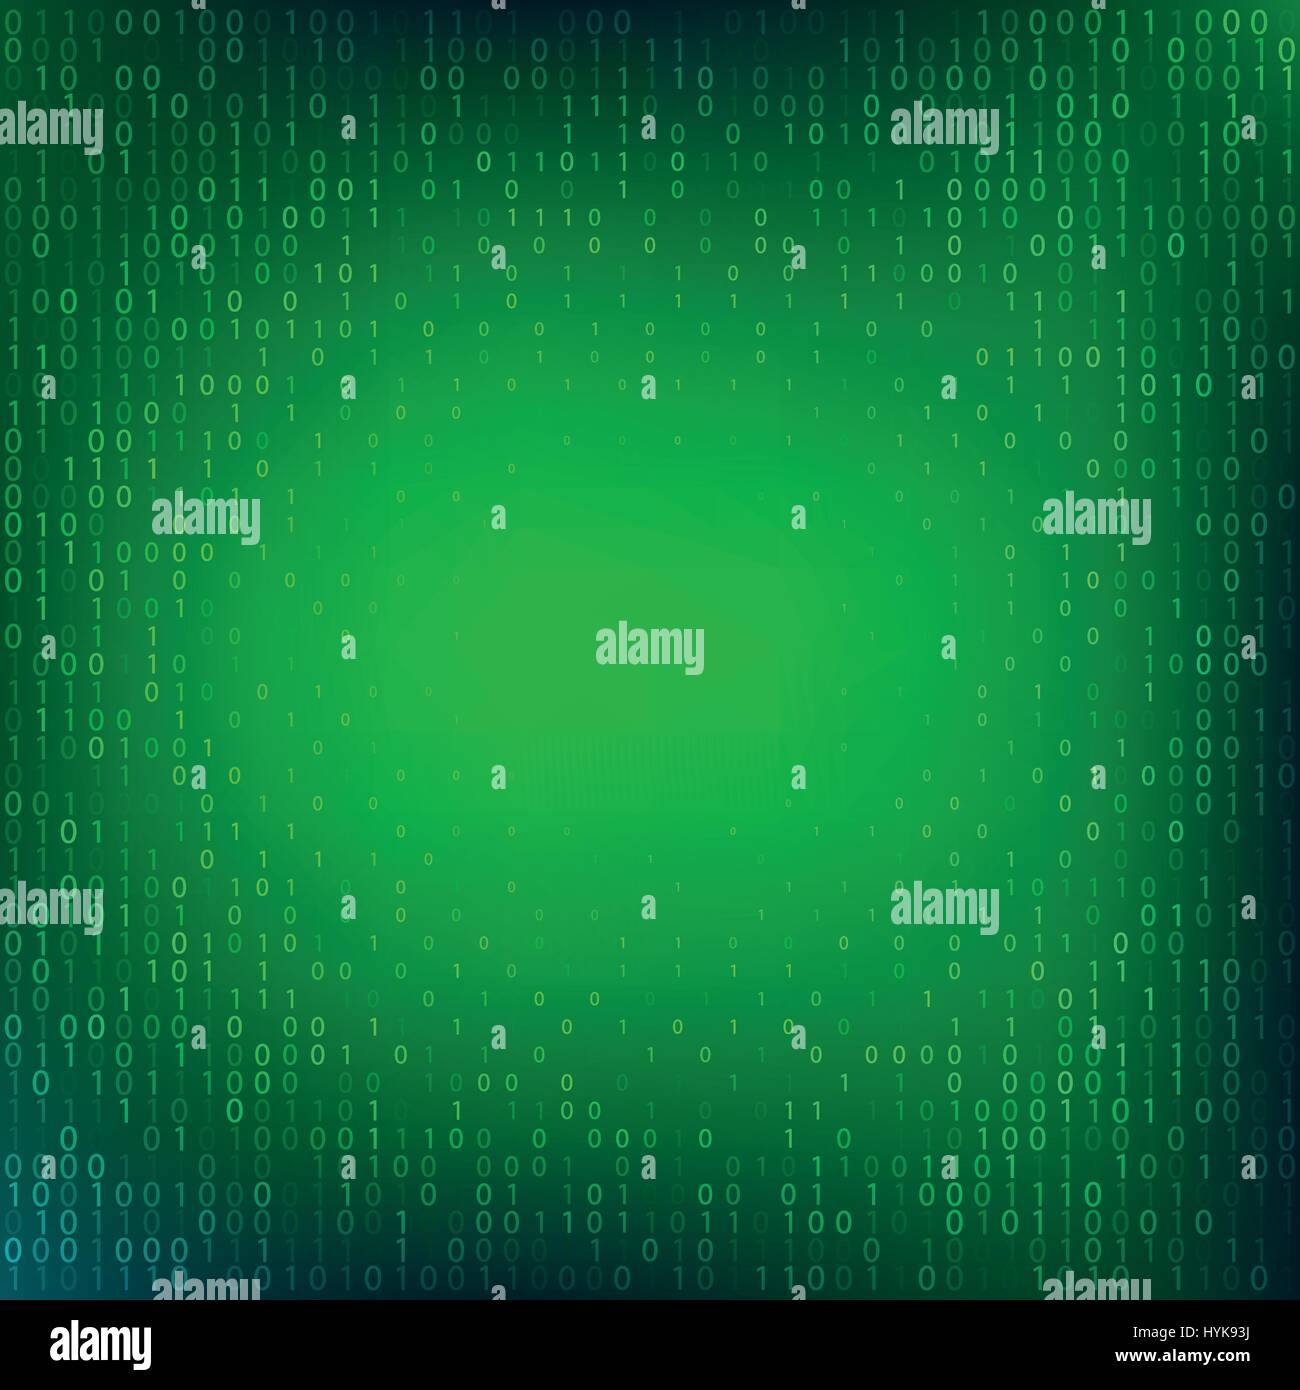 Isolierte abstrakte Grünfärbung Binärcode Herbst Hintergrund, Programmierung Element-Hintergrund-Vektor-illustration Stock Vektor